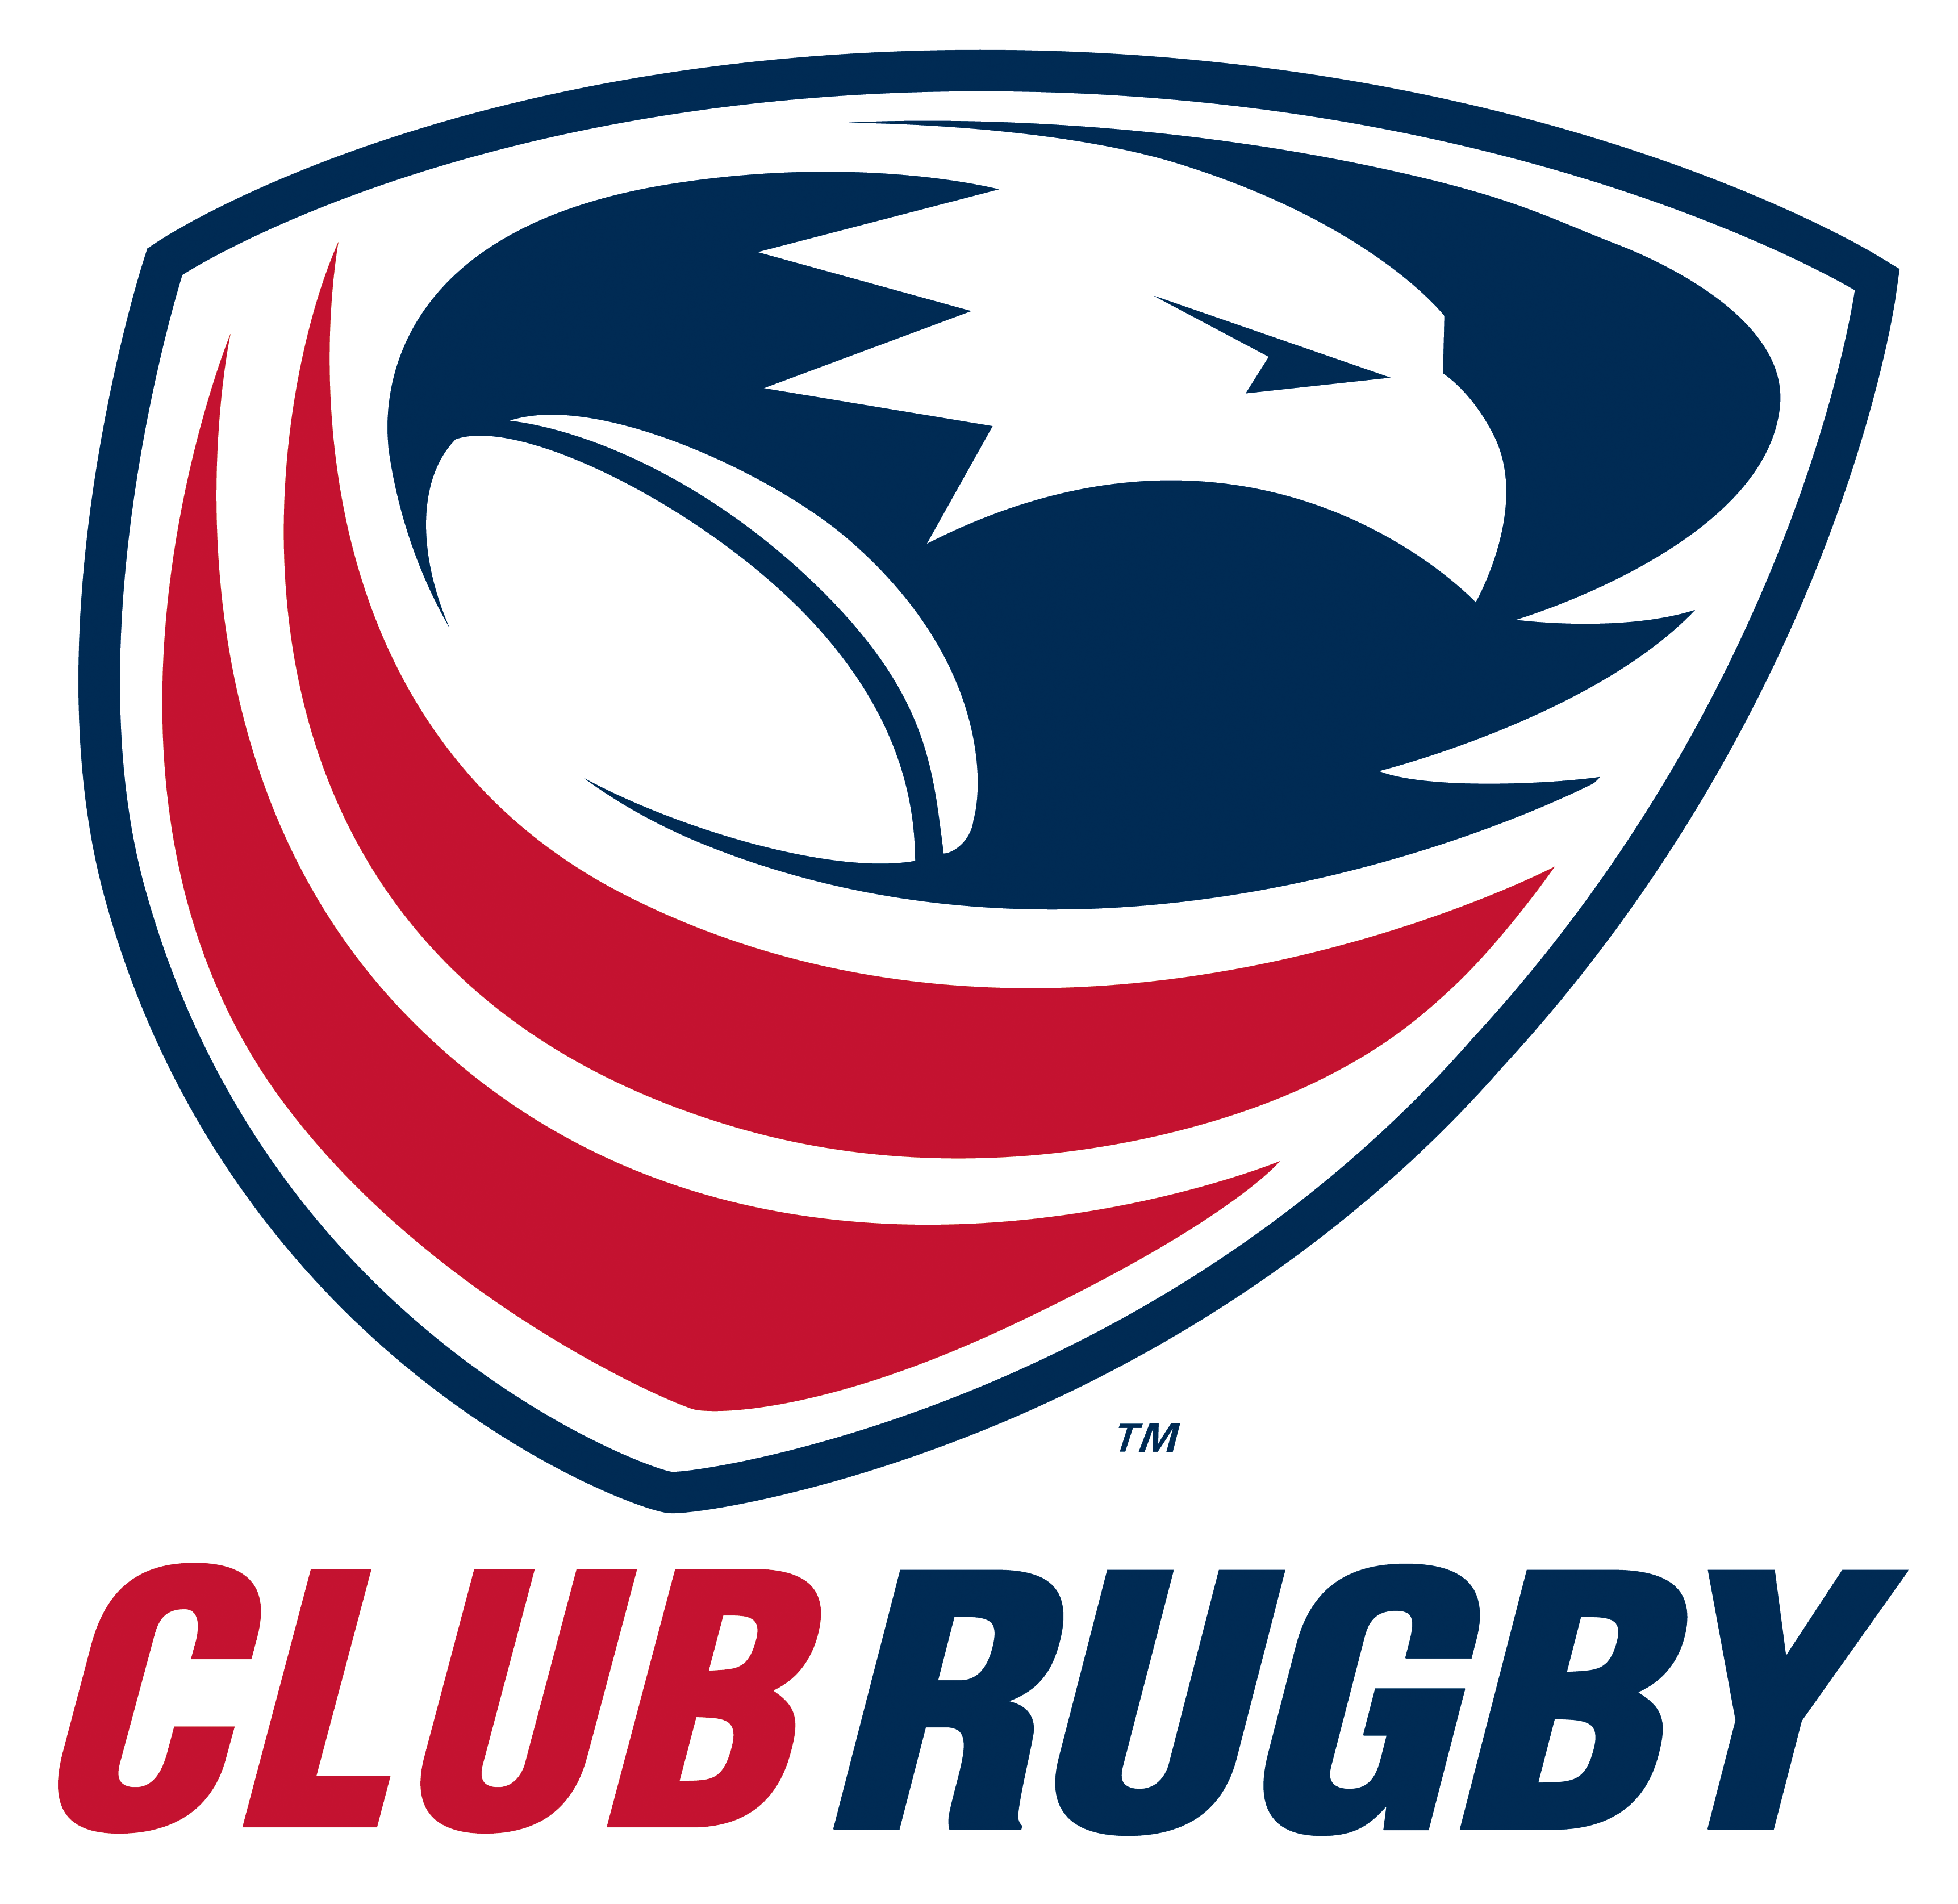 USA Club Rugby